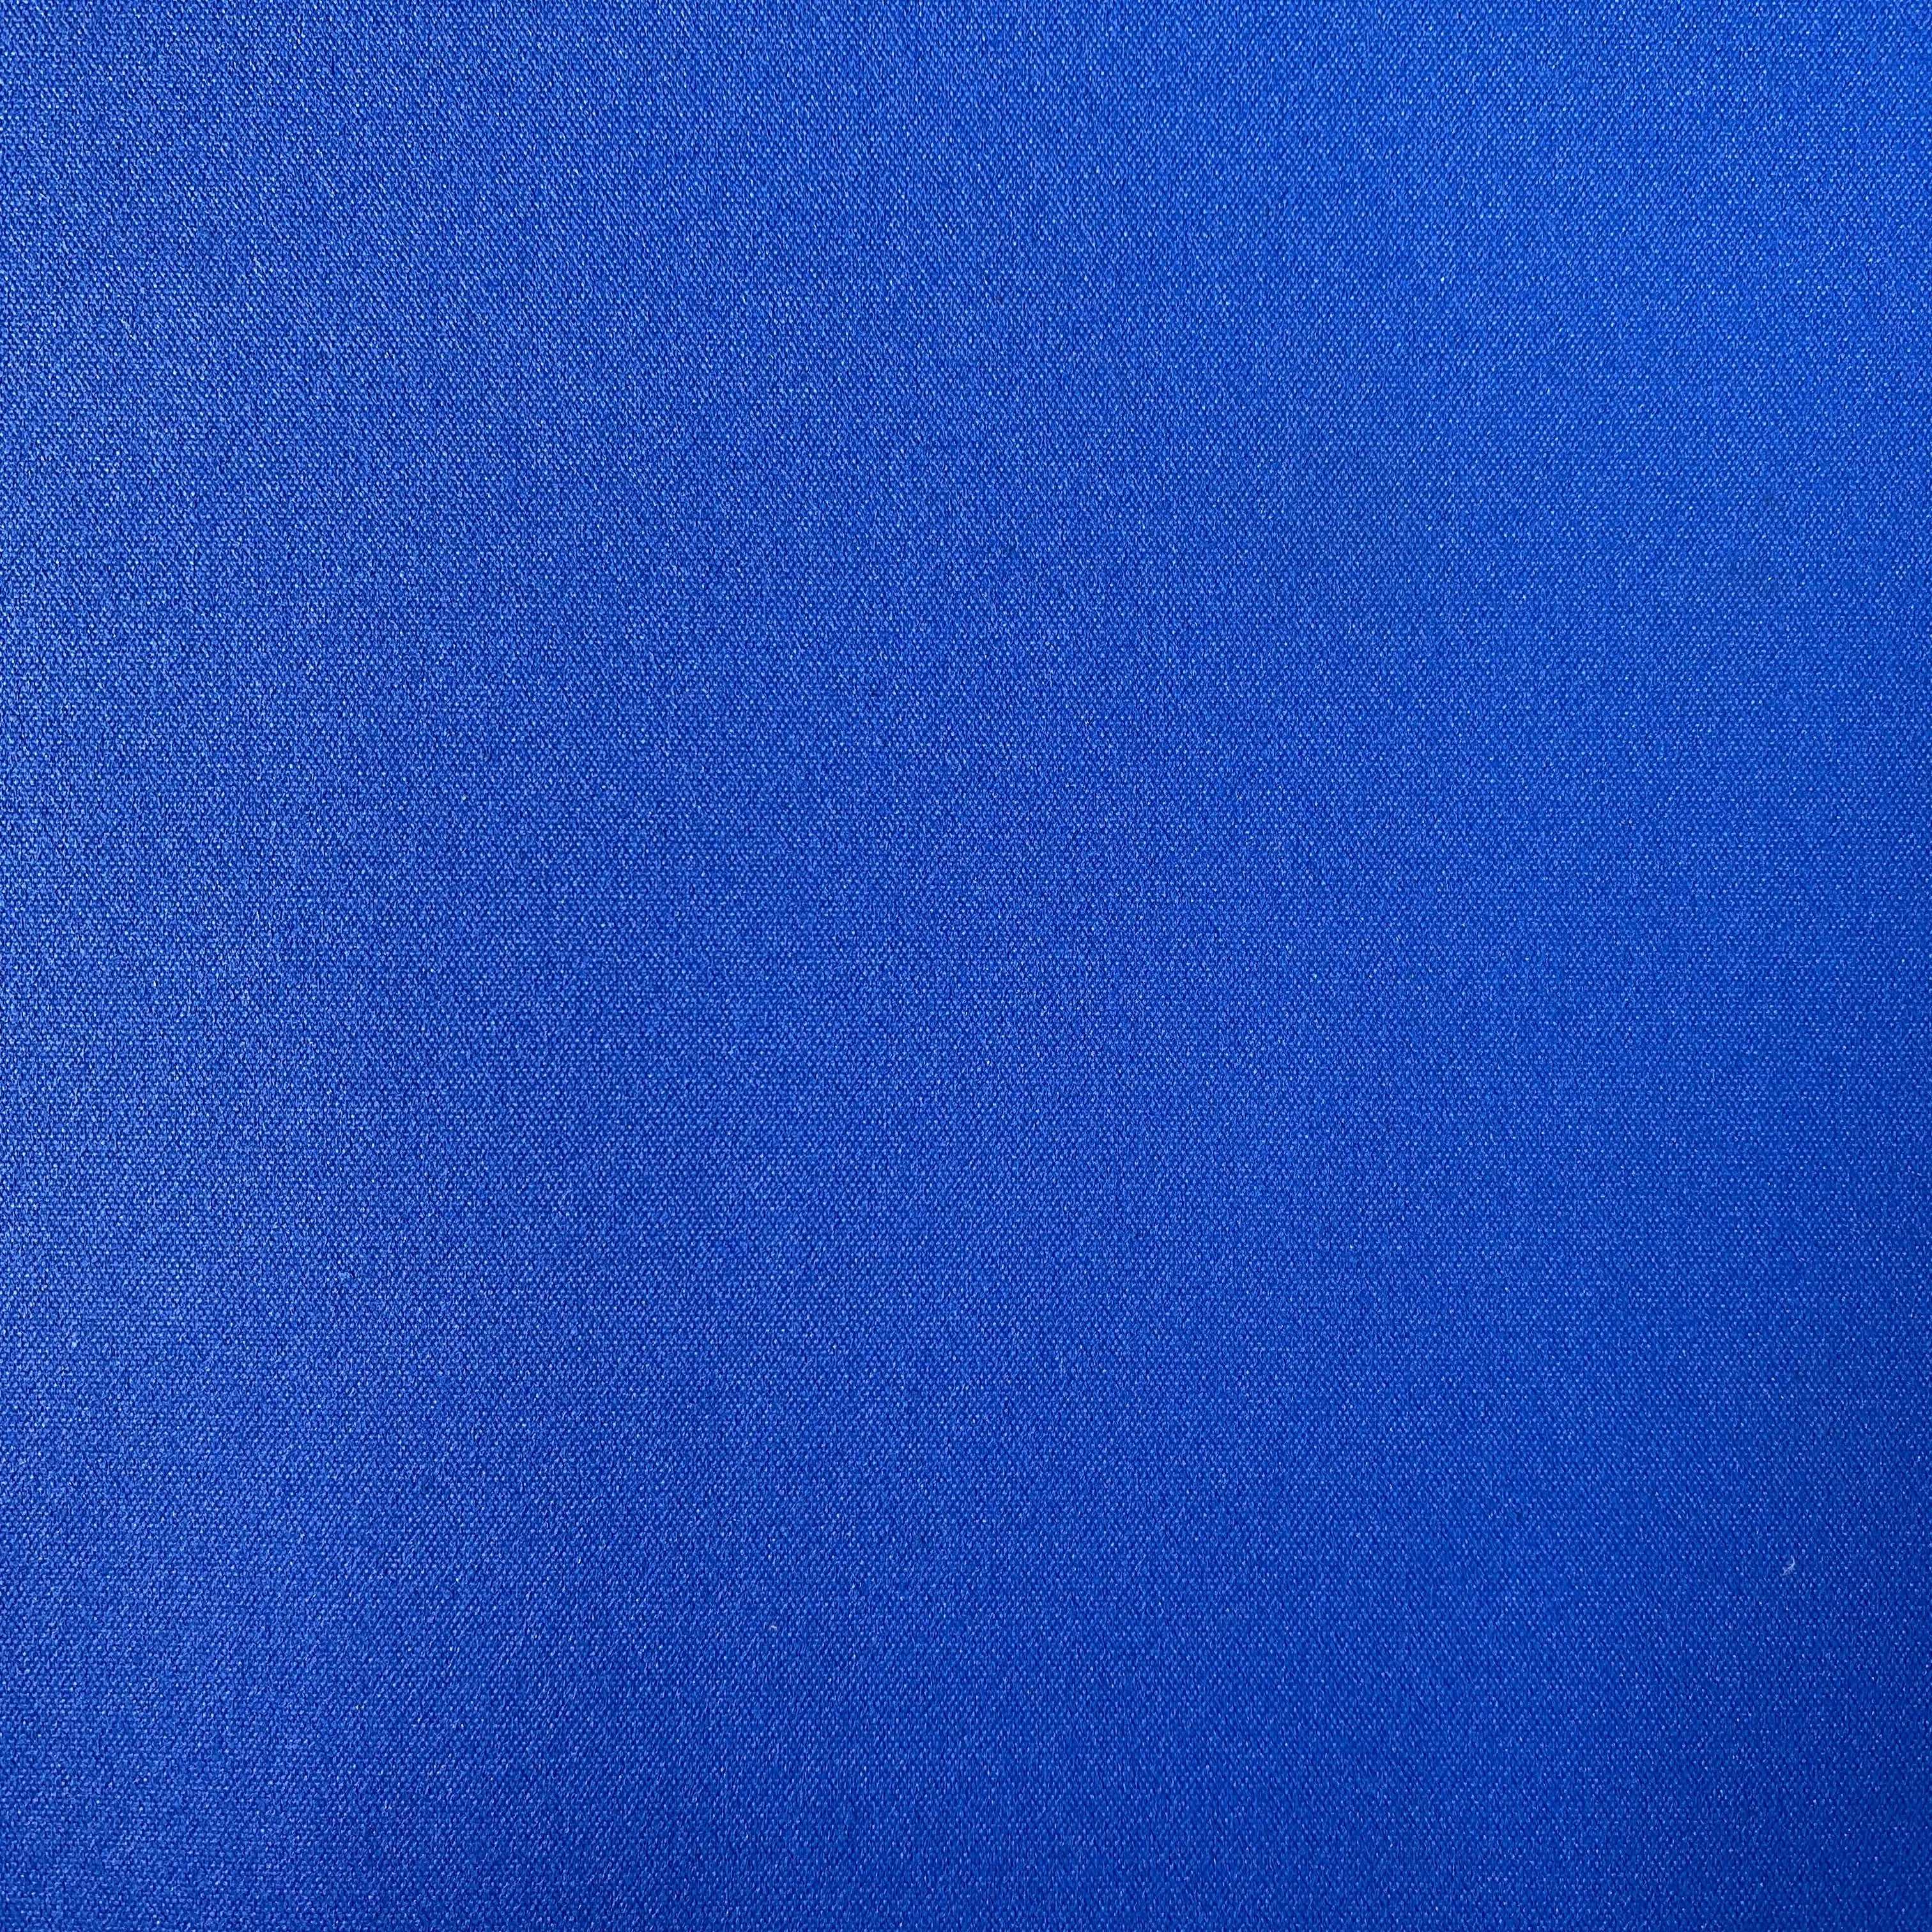 Solid Ocean Blue